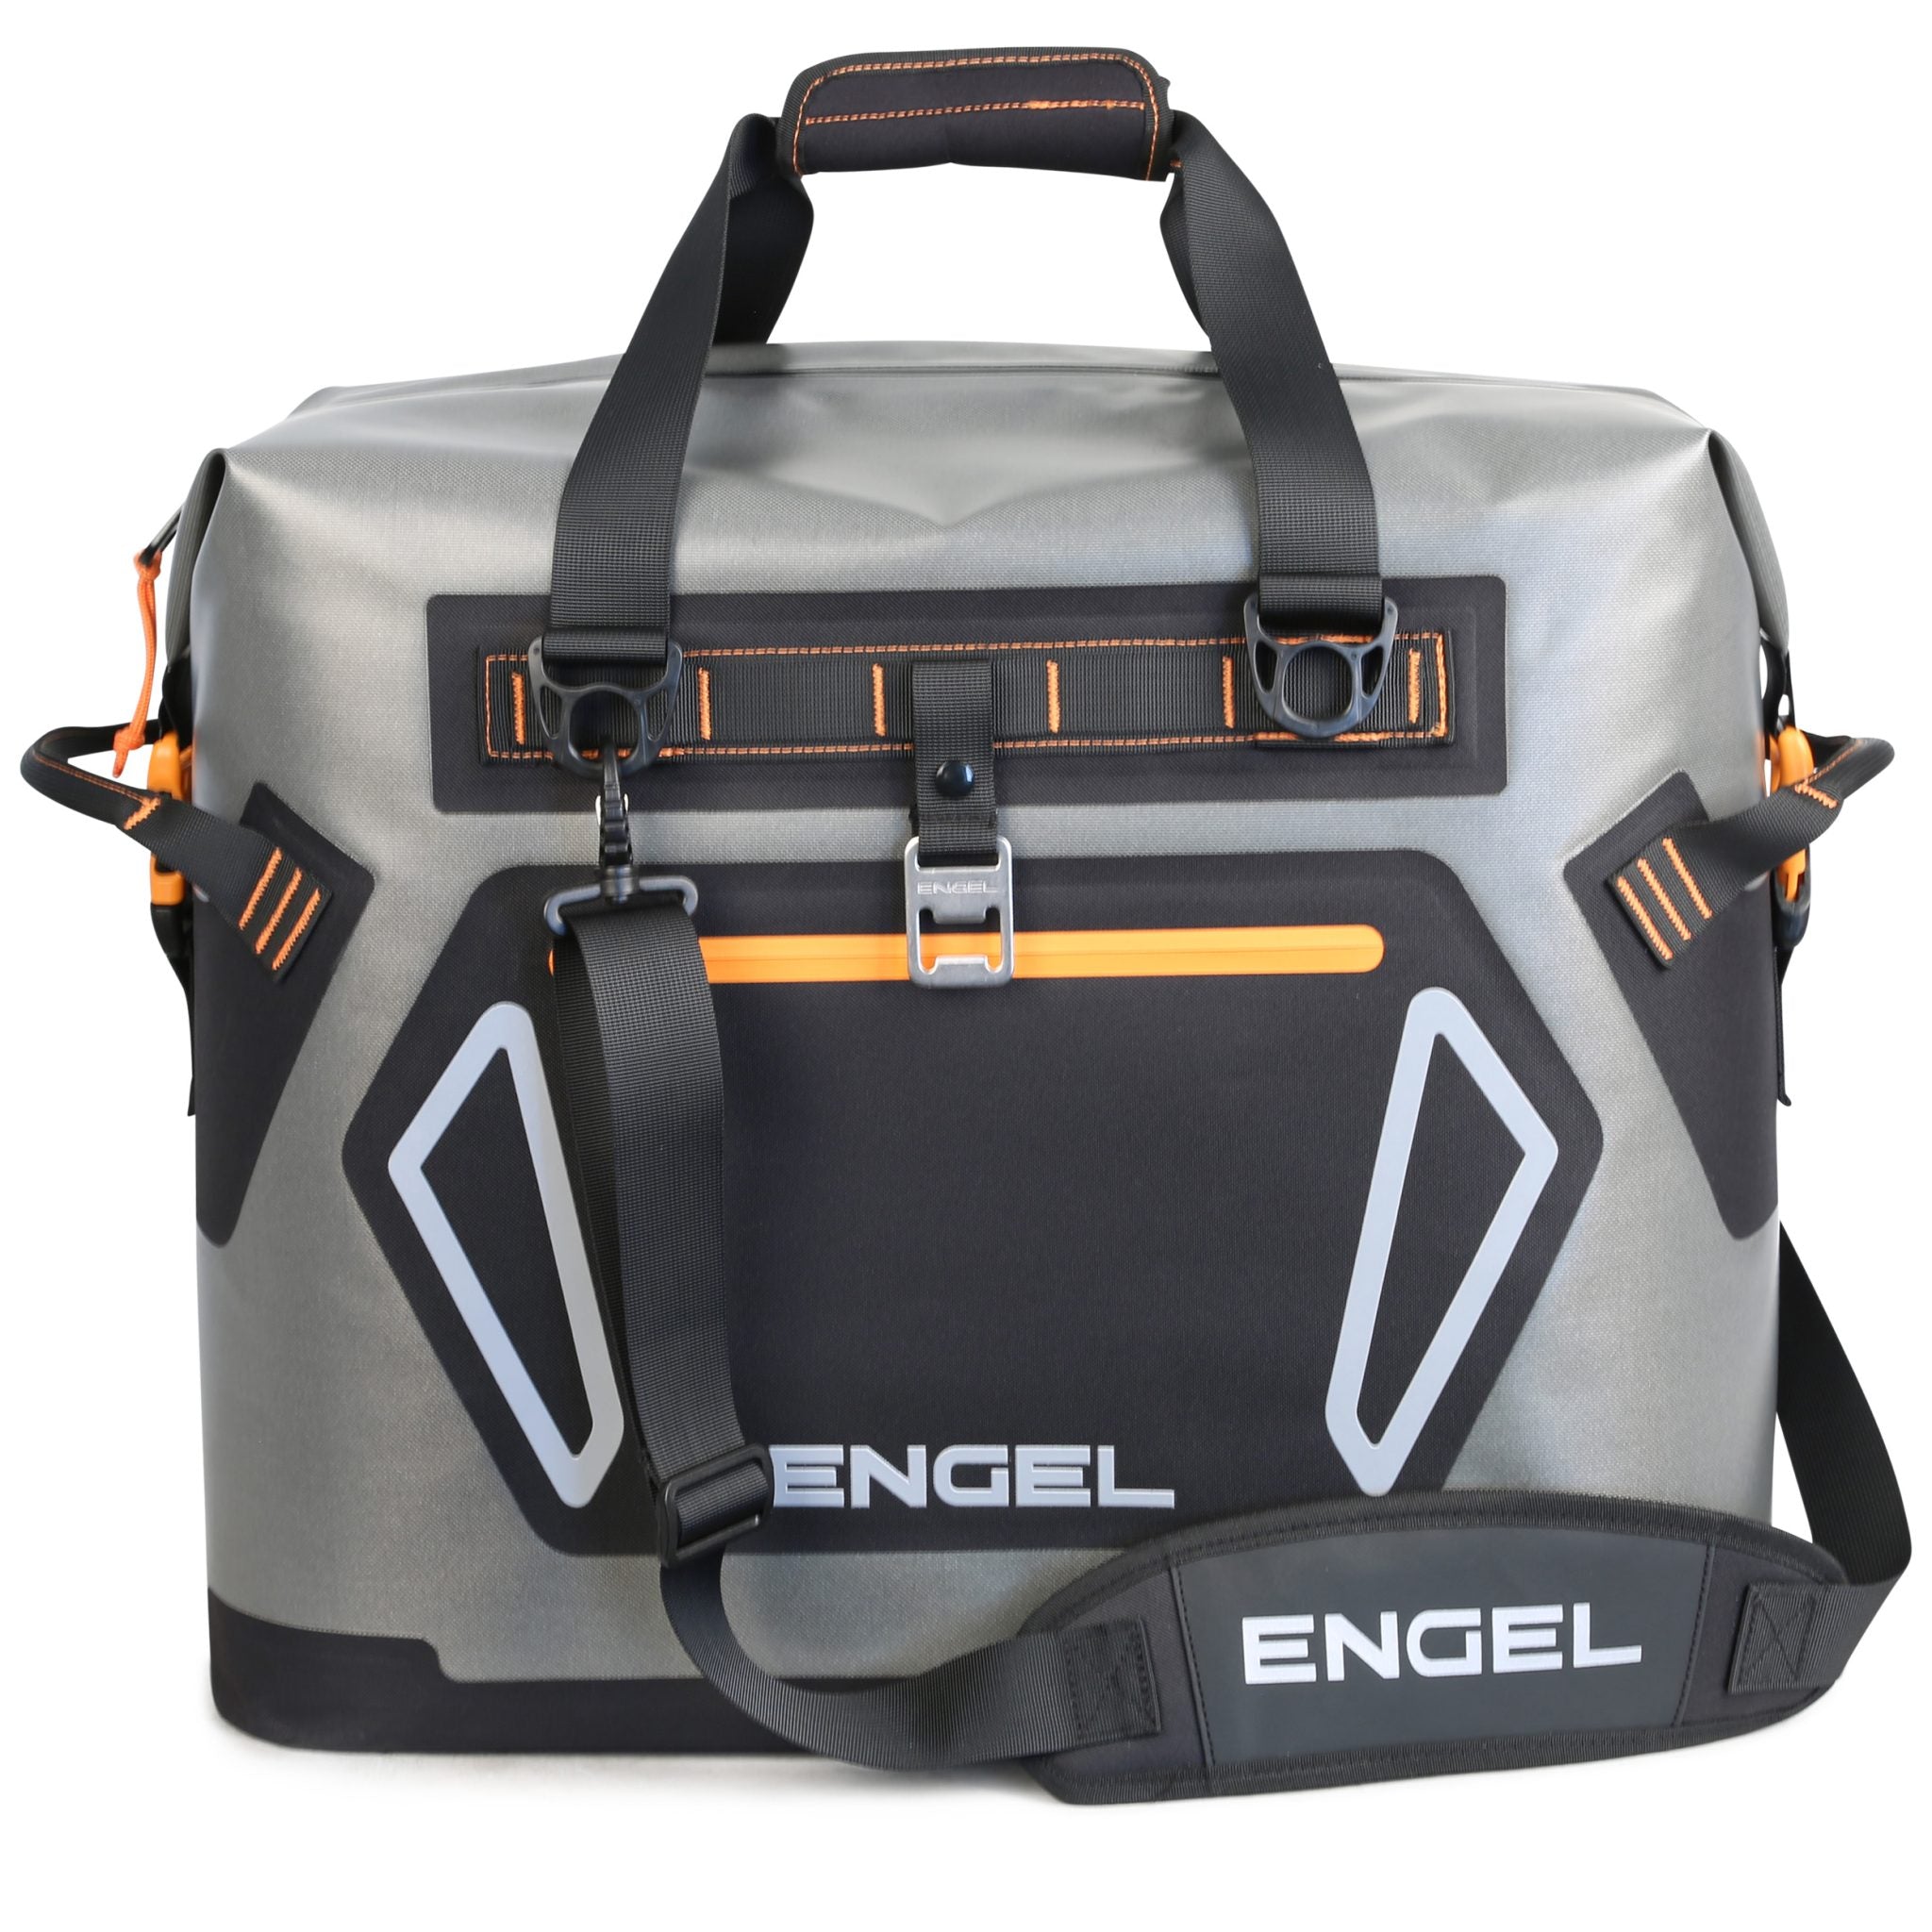 Engel Soft Cooler Bag 30LT Orange